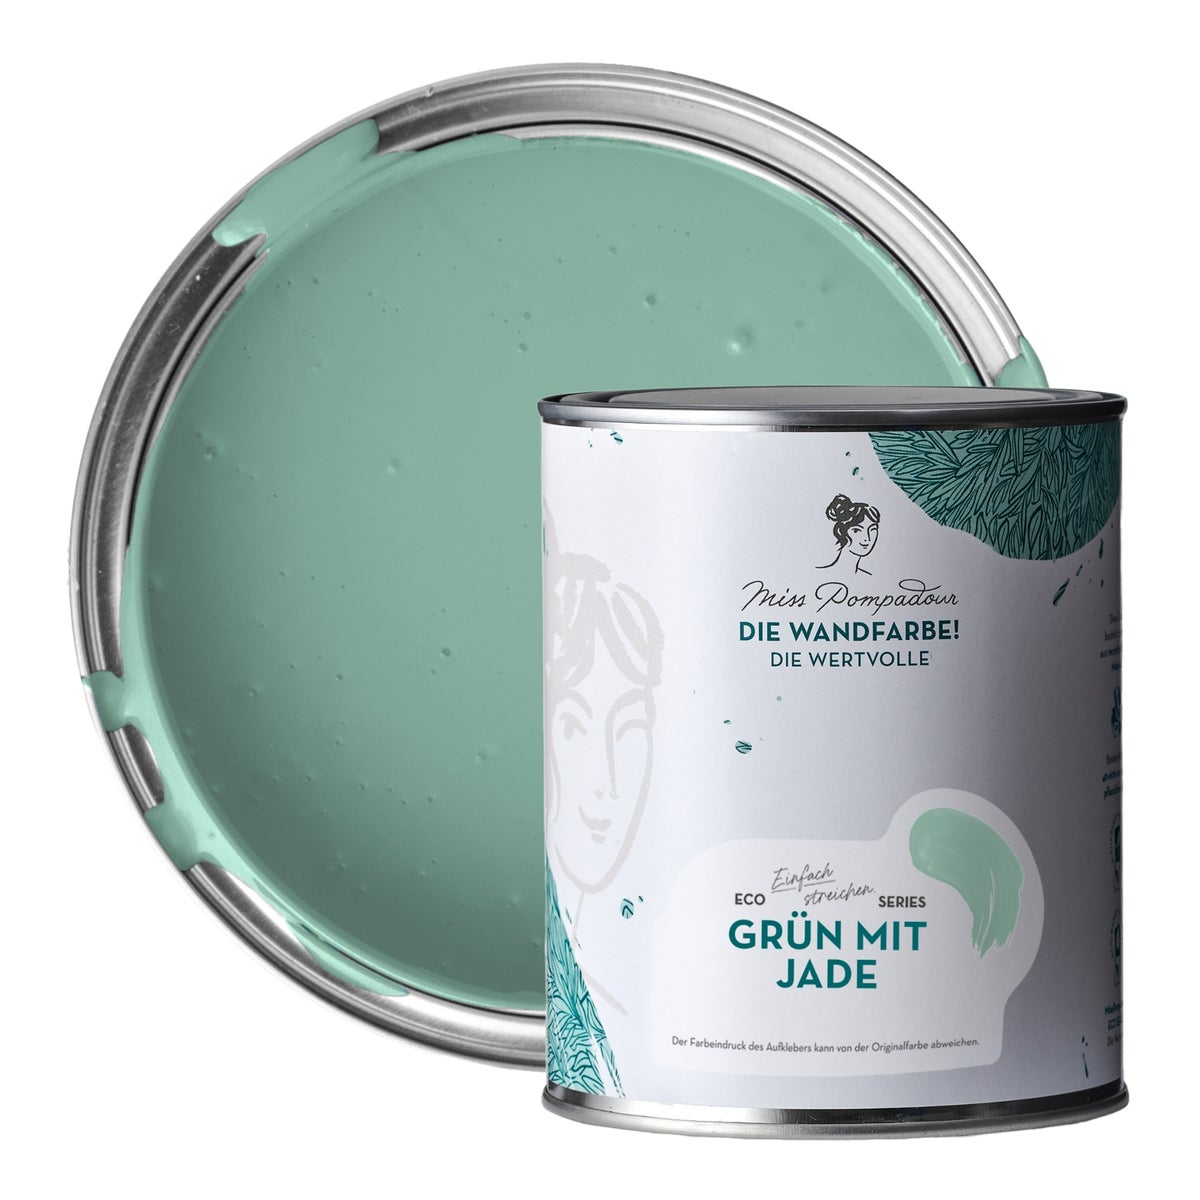 MissPompadour edelmatte Wandfarbe 1L Grün mit Jade - sehr hohe Deckkraft - geruchsneutrale, spritzfreie Farbe - atmungsaktive, wasserbasierte Innenfarbe/Deckenfarbe - Die Wertvolle